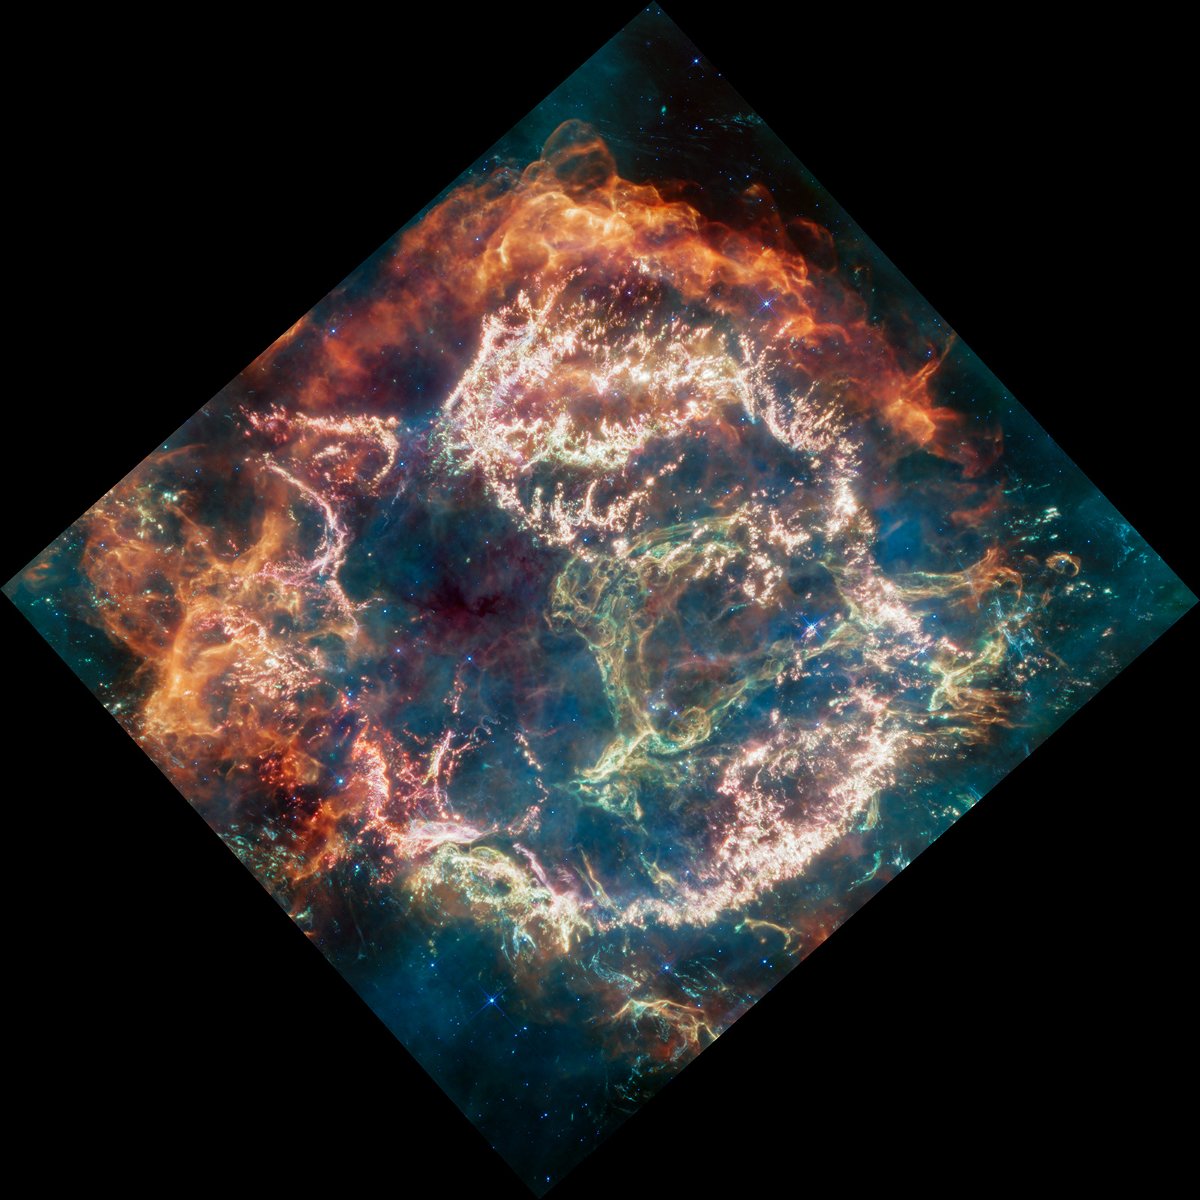 <i>NASA/ESA/CSA/D. D. Milisavljevic/T. Temim/I. De Looze</i><br/>Cassiopeia A (Cas A) is a supernova remnant located about 11